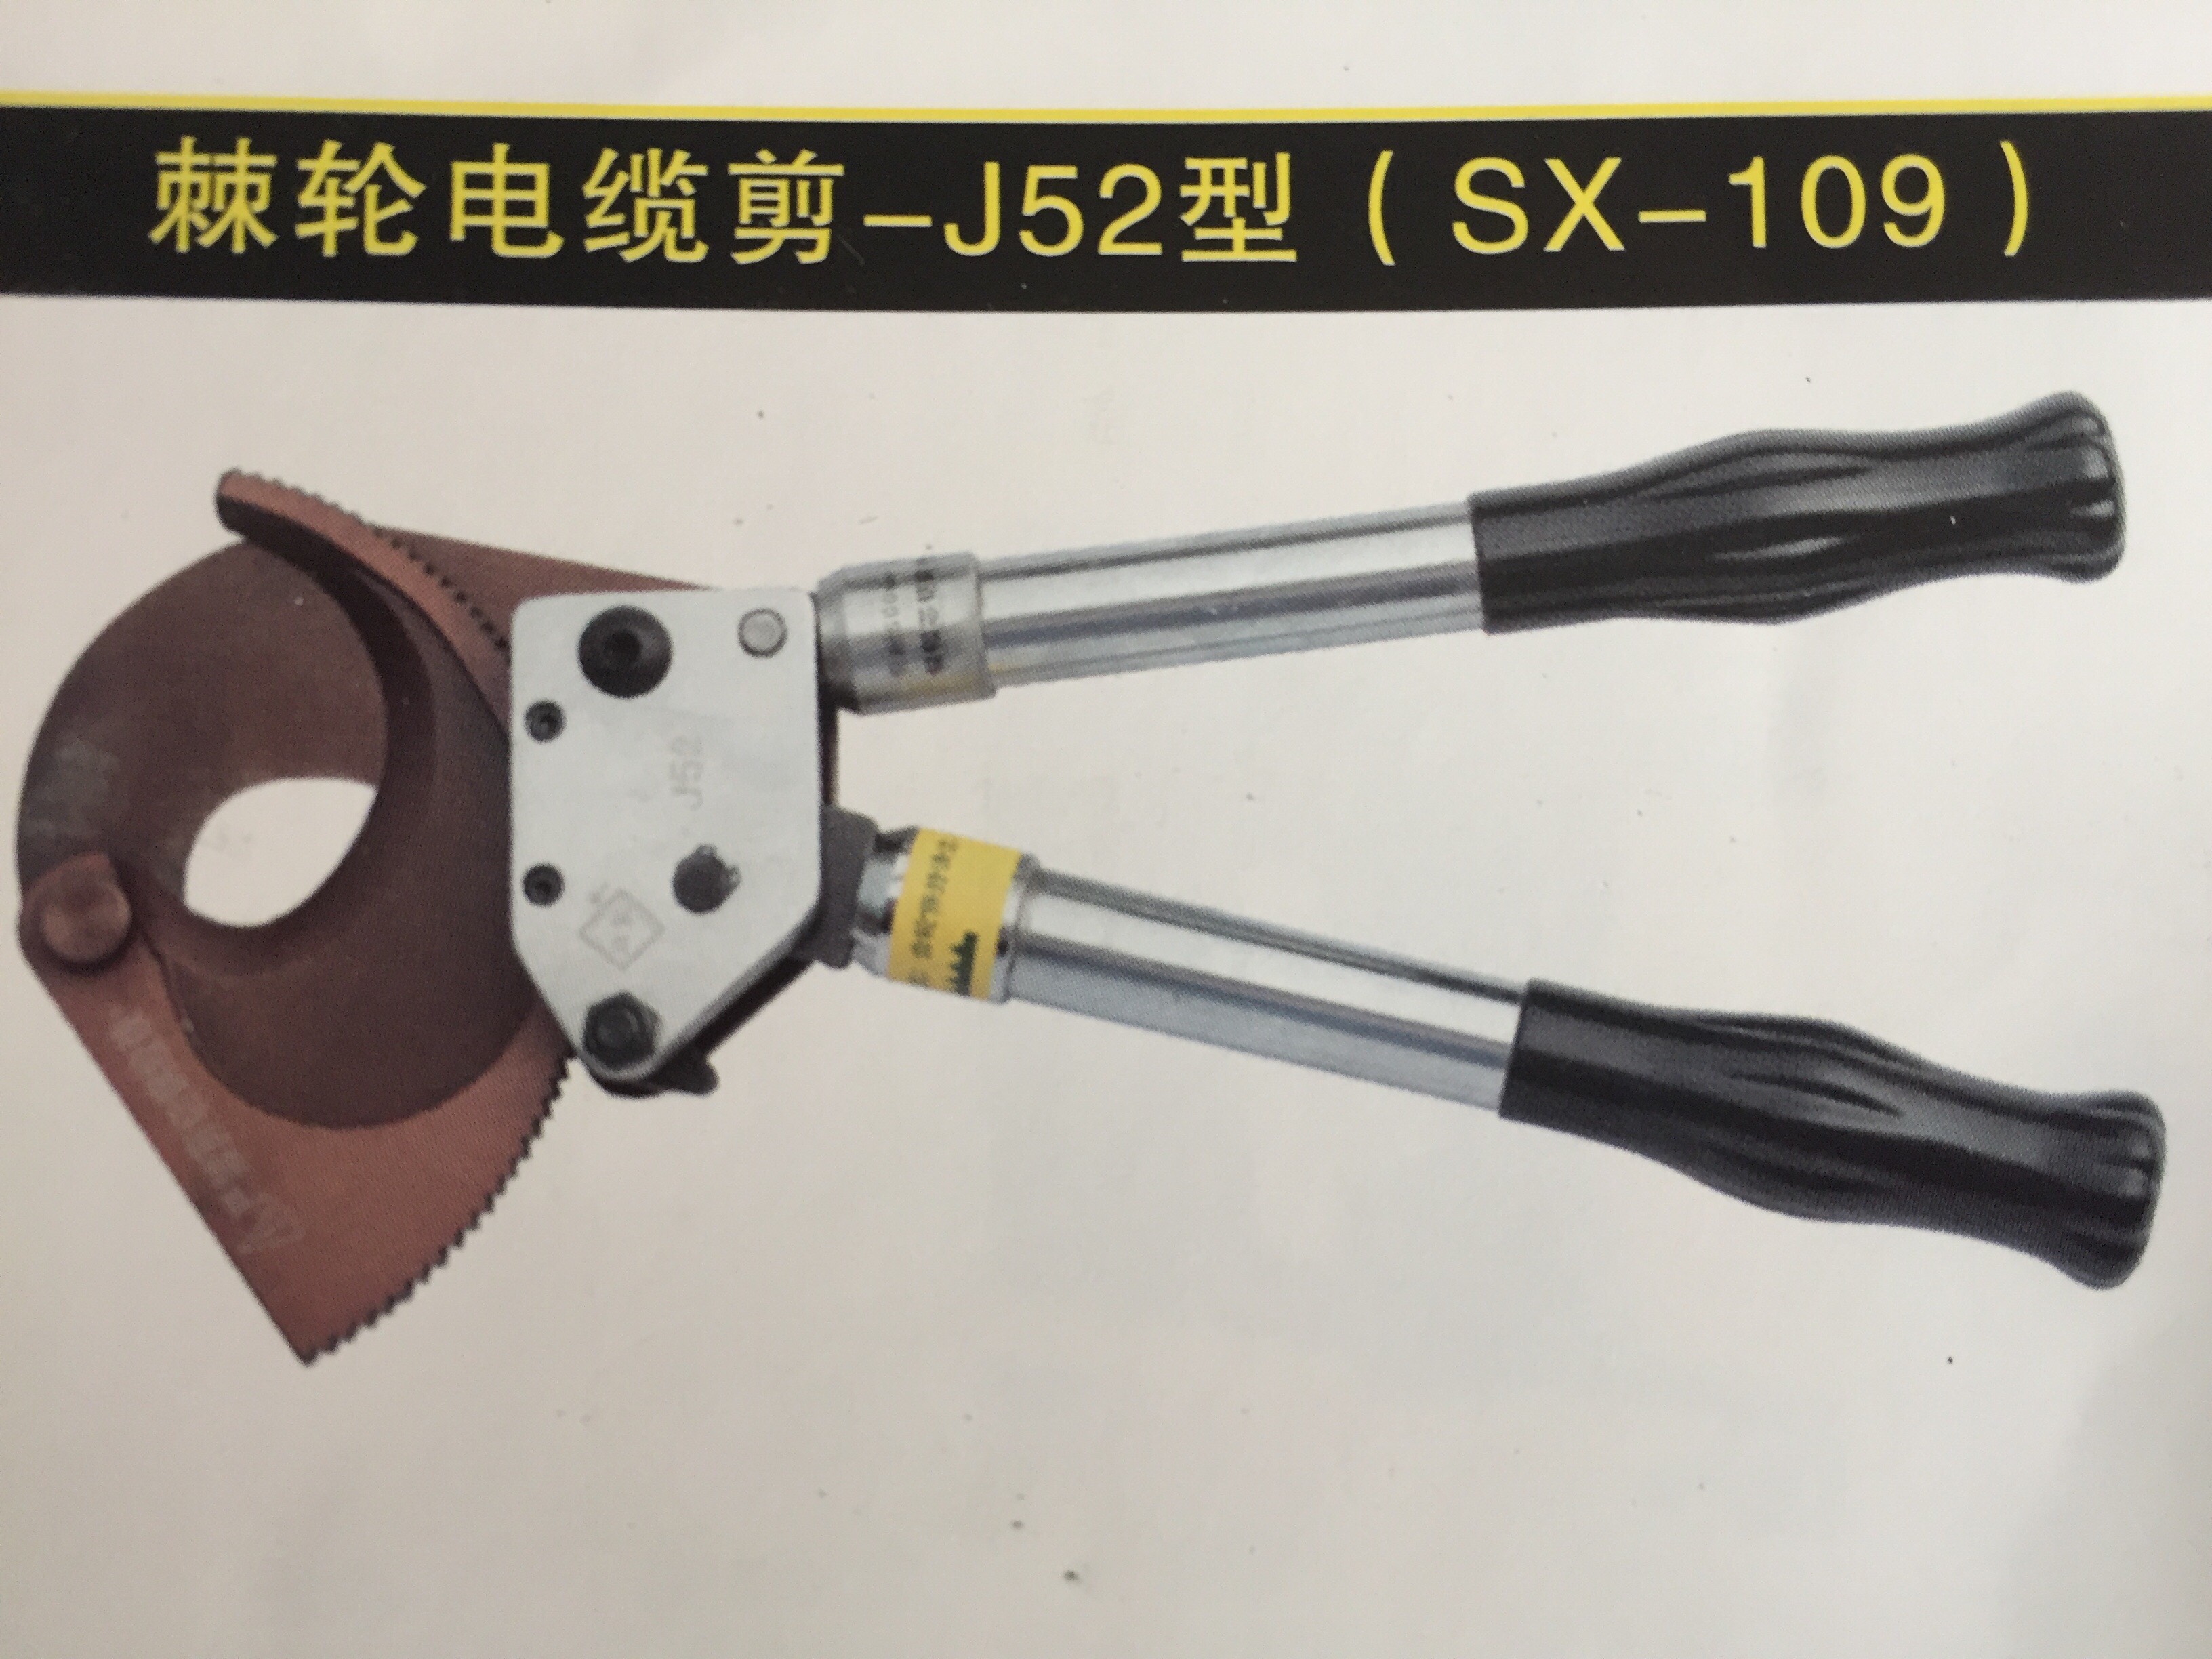 棘轮电缆剪-J52型